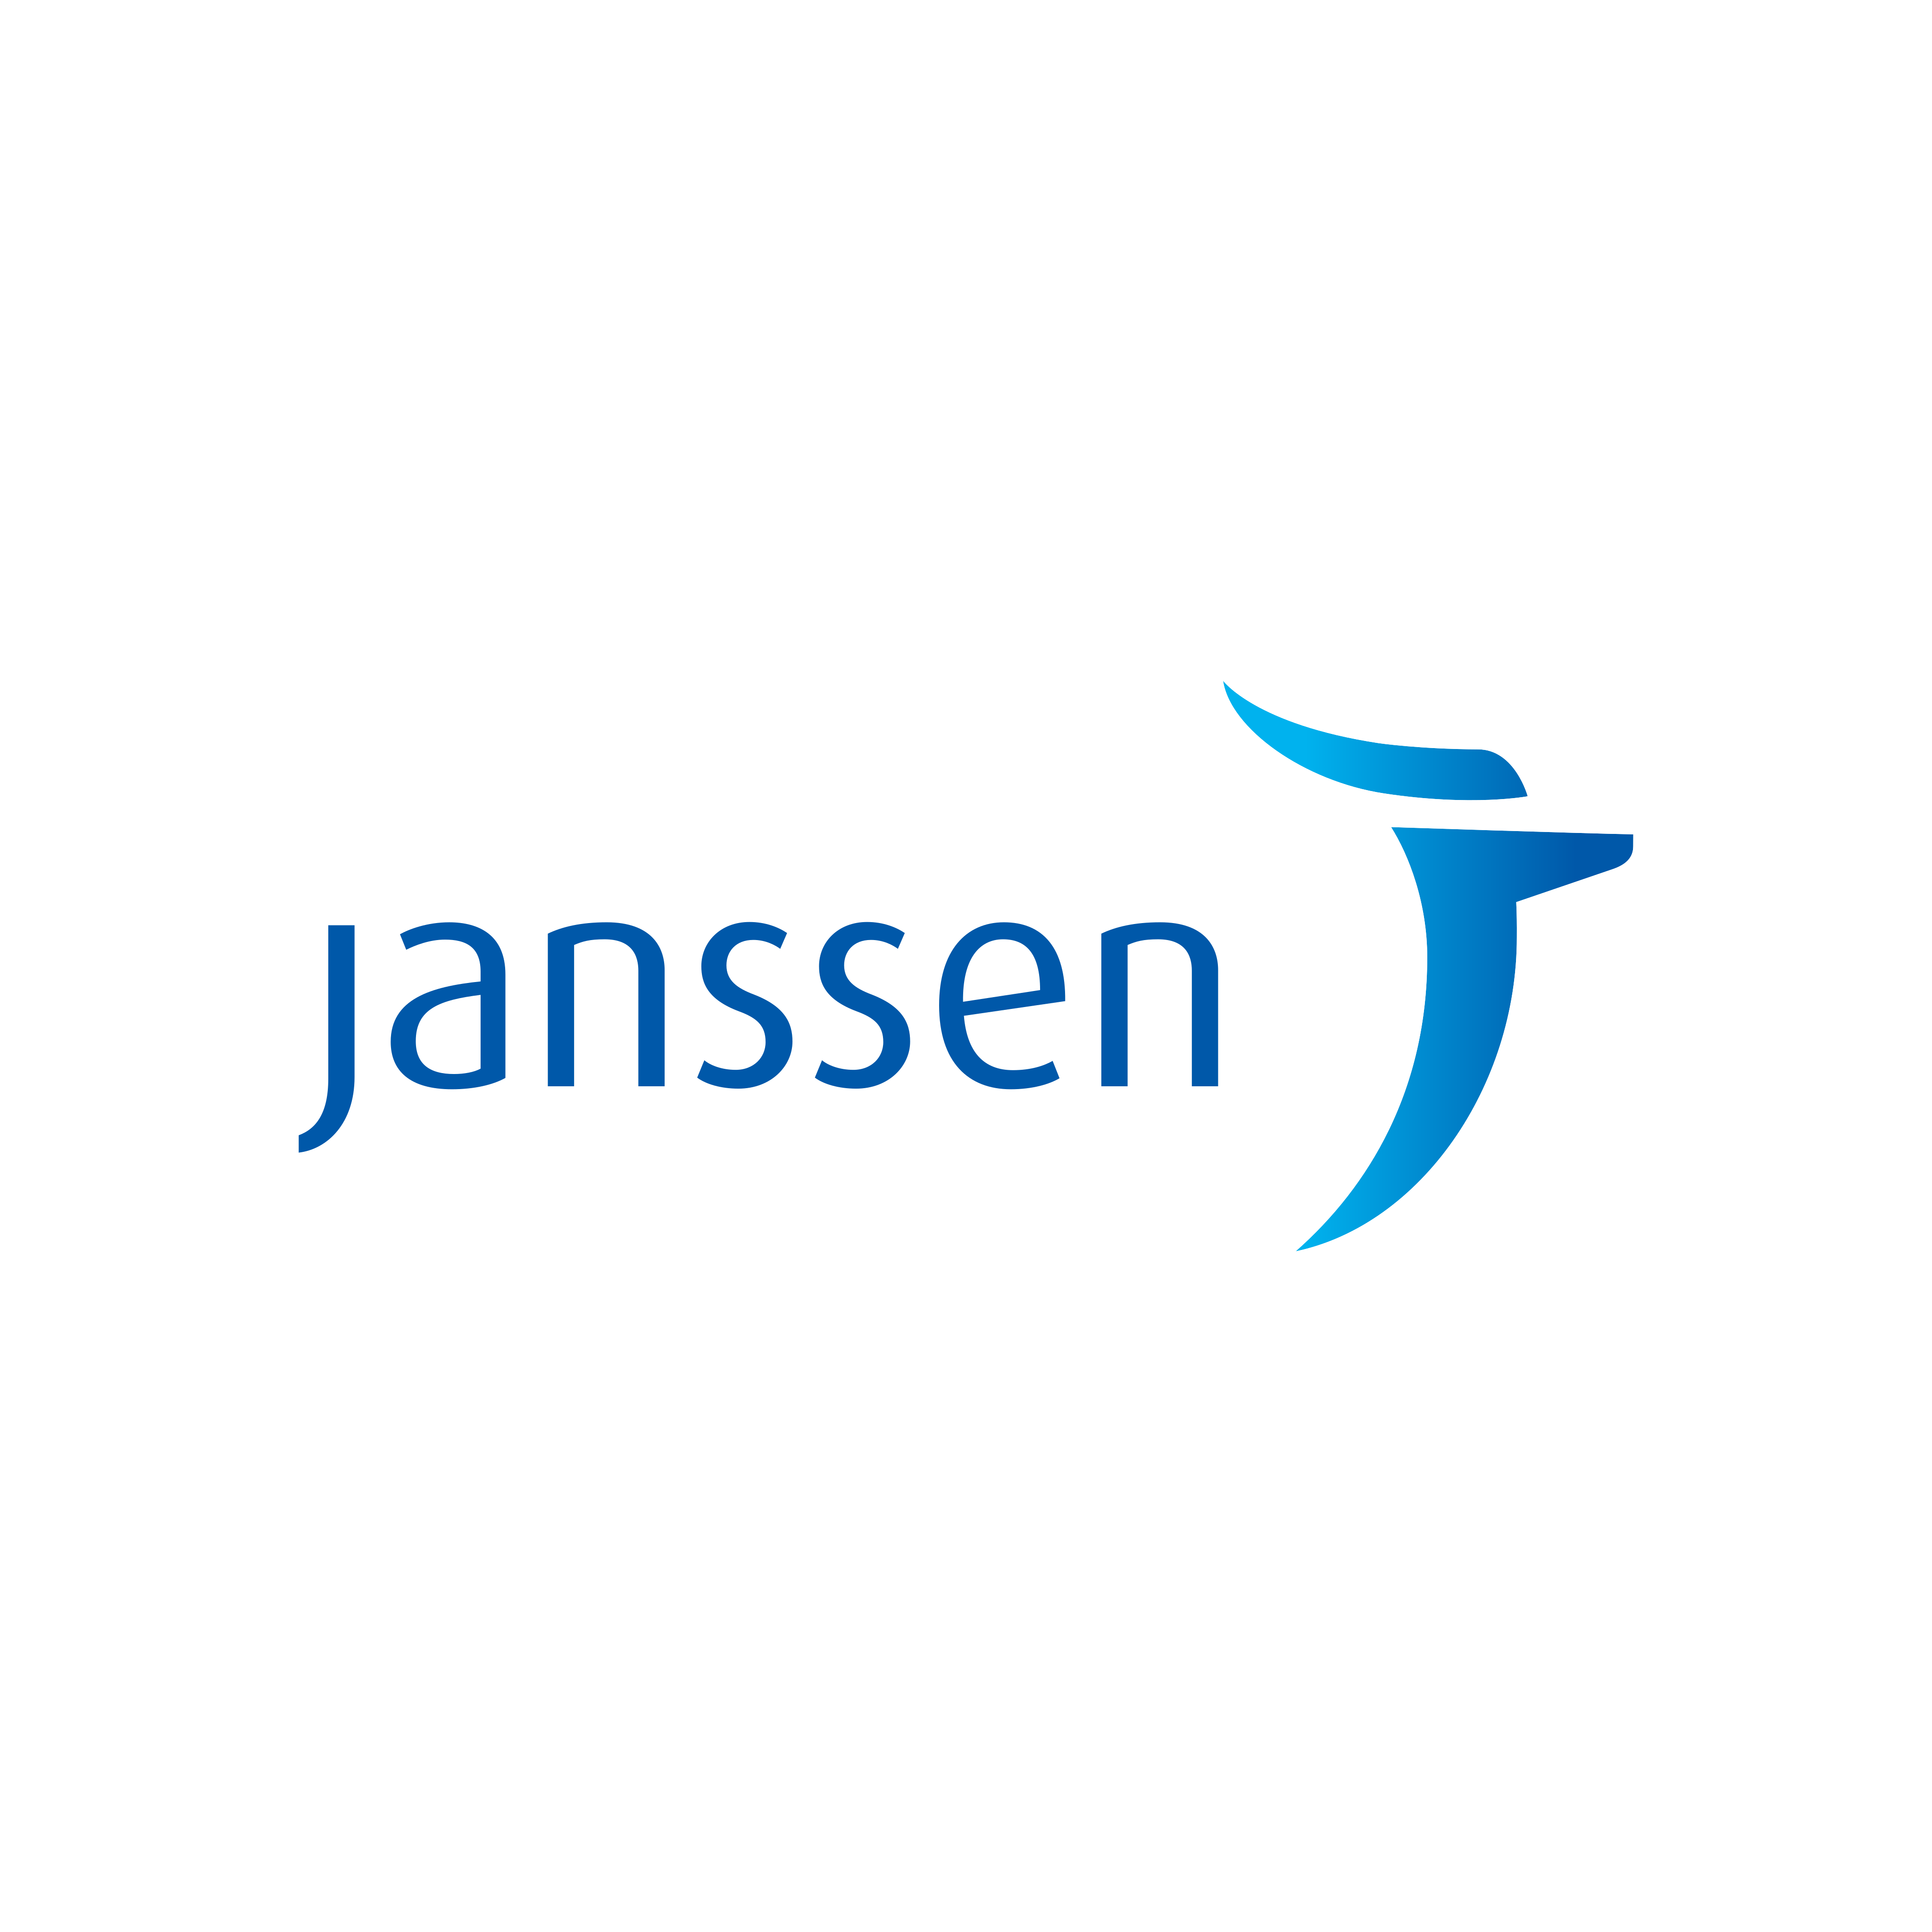 janssen logo 0 - Janssen Logo